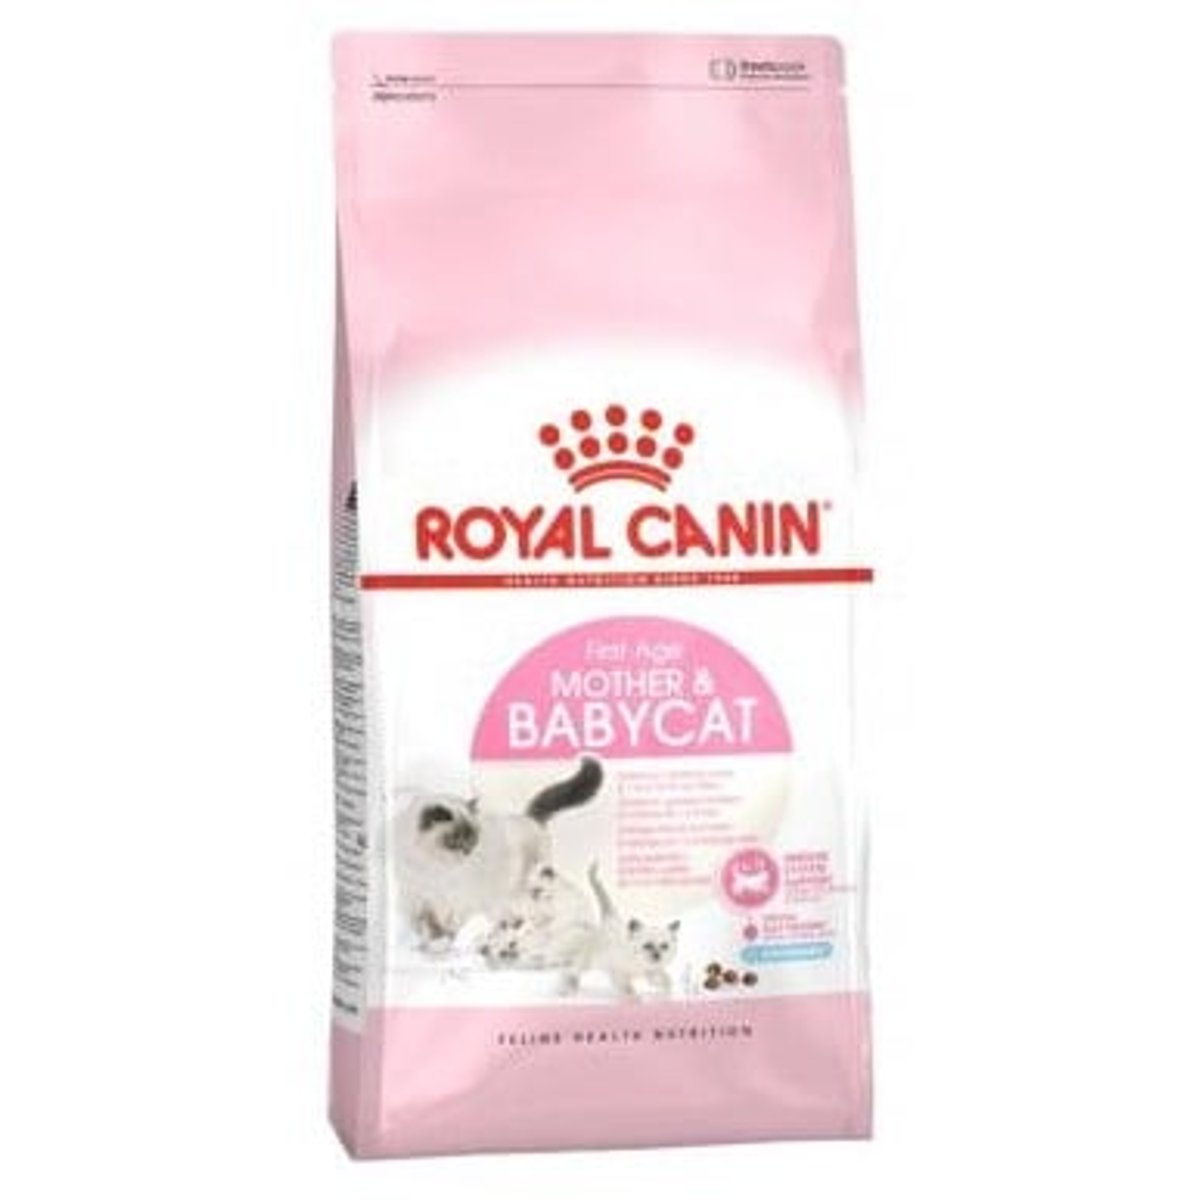 Royal Canin Babycat granule pro koťata